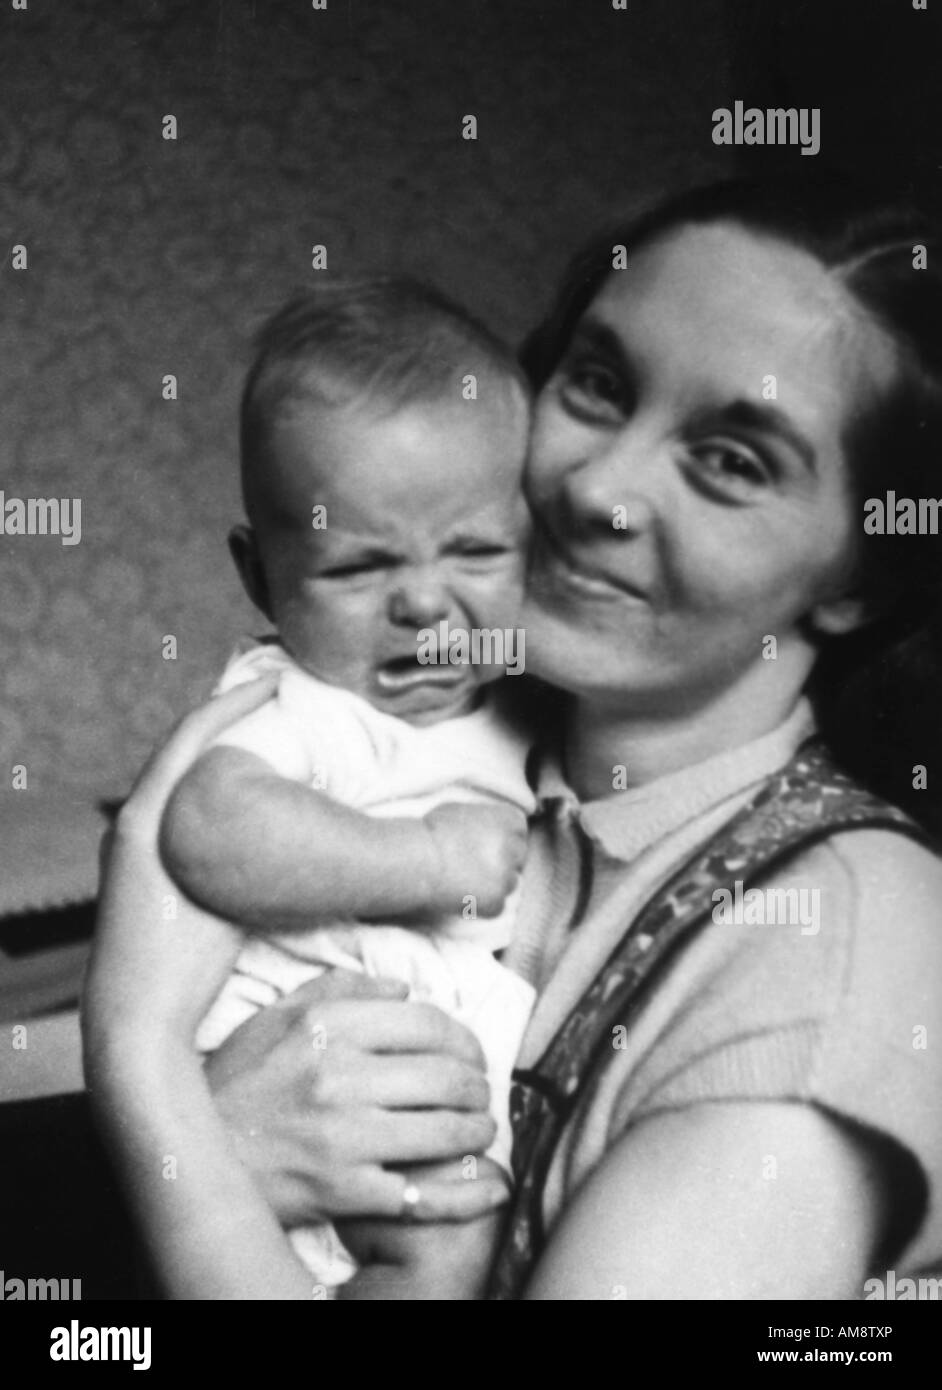 Vecchio VINTAGE IN BIANCO E NERO DI FAMIGLIA fotografia istantanea della giovane madre CUDDLING piangere baby boy Foto Stock